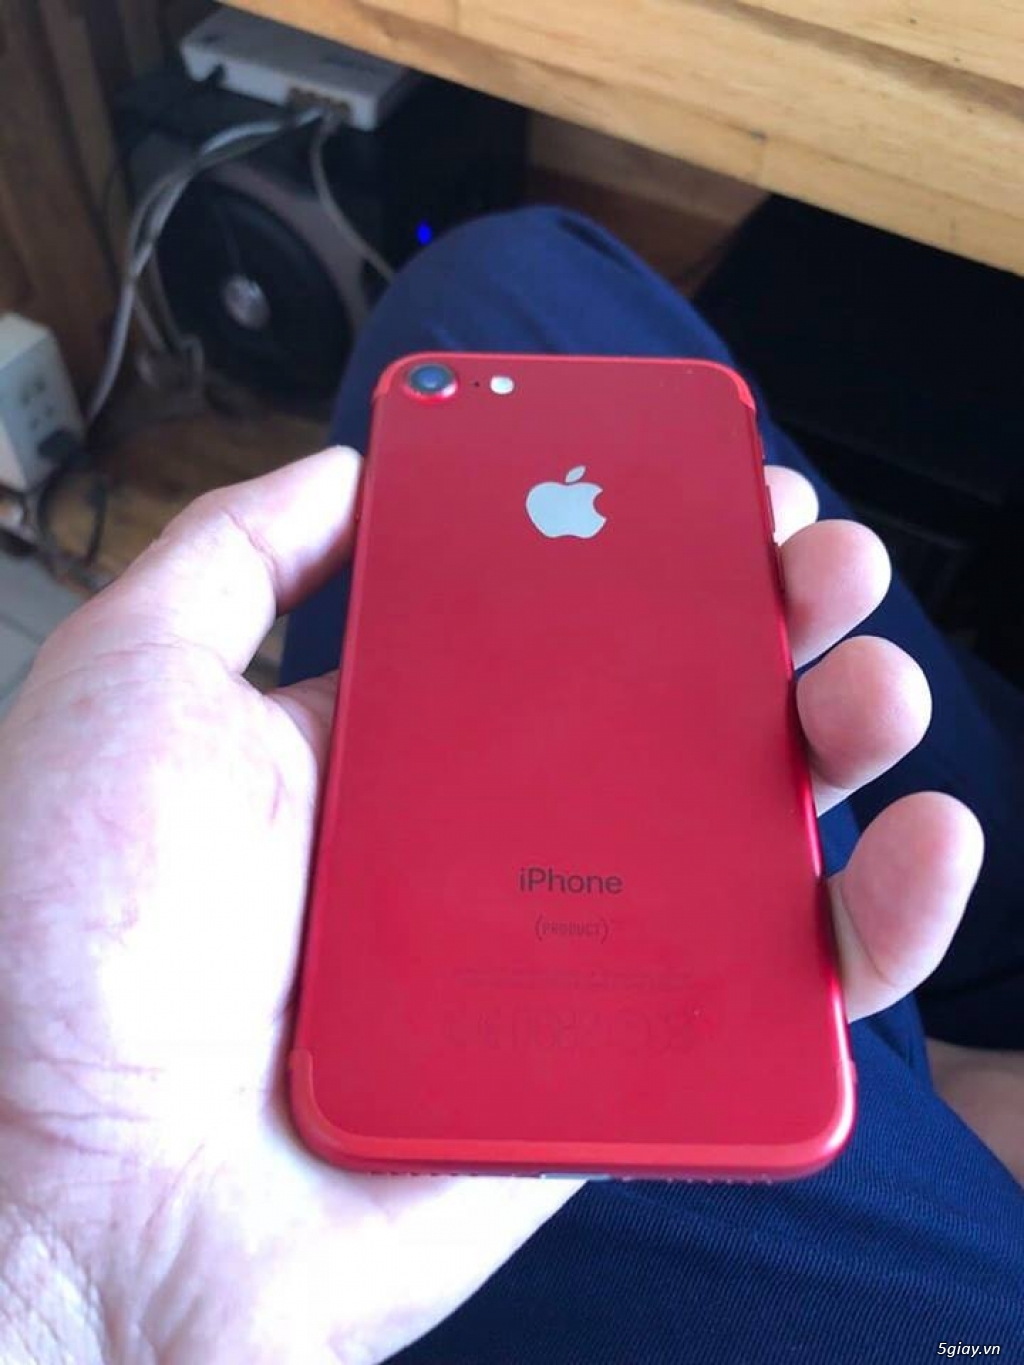 Cần bán: iphone 7 128g màu đỏ - 1